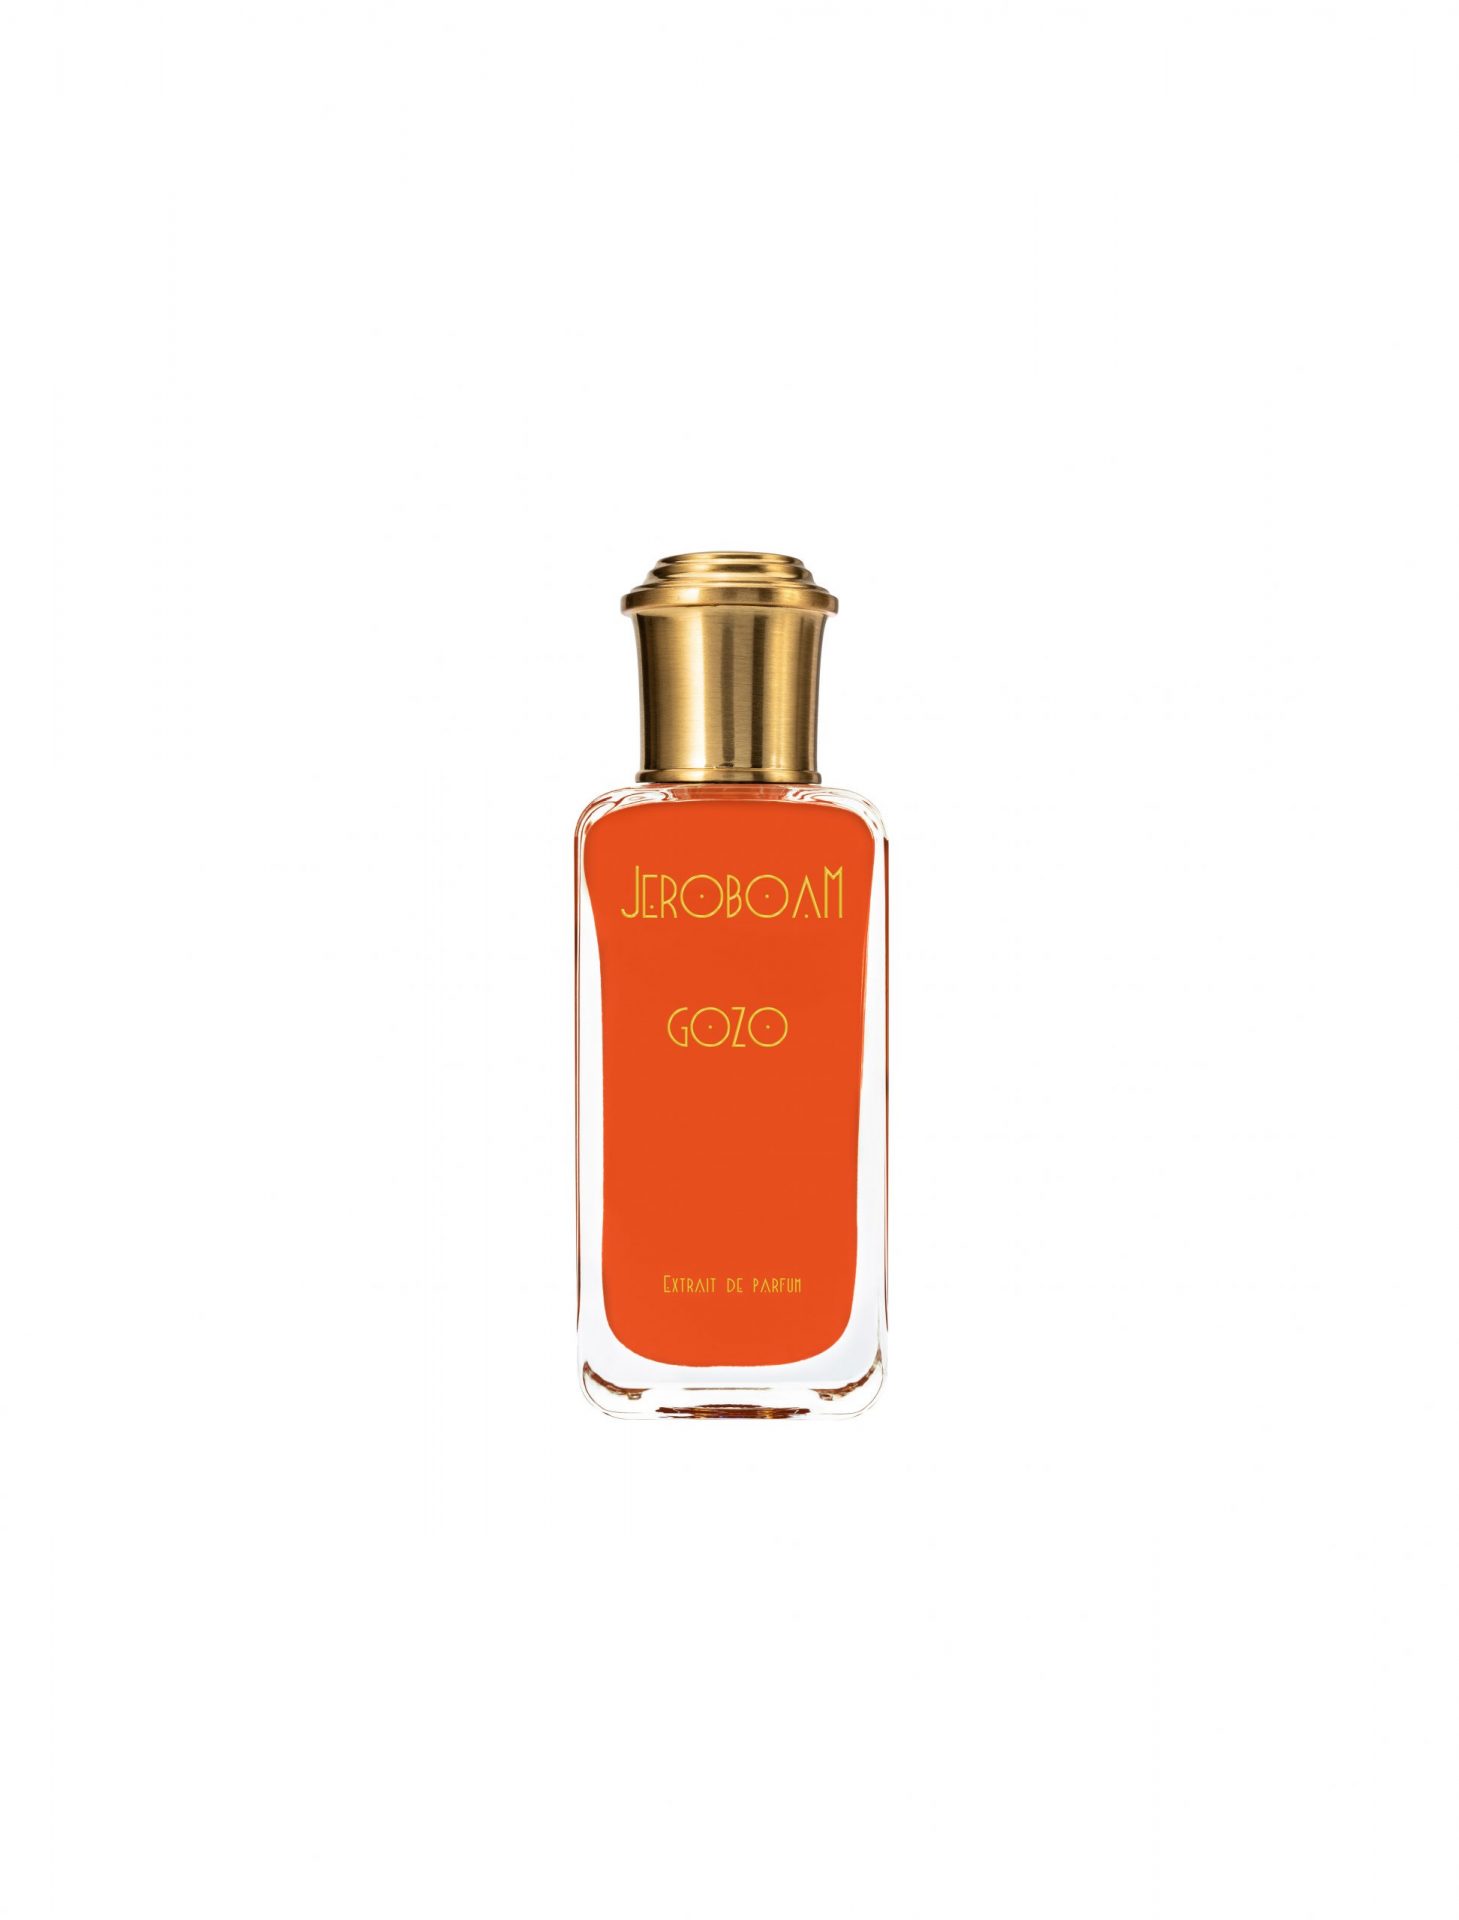 Gozo Extrait de Parfum - Crime Passionnel Perfumes